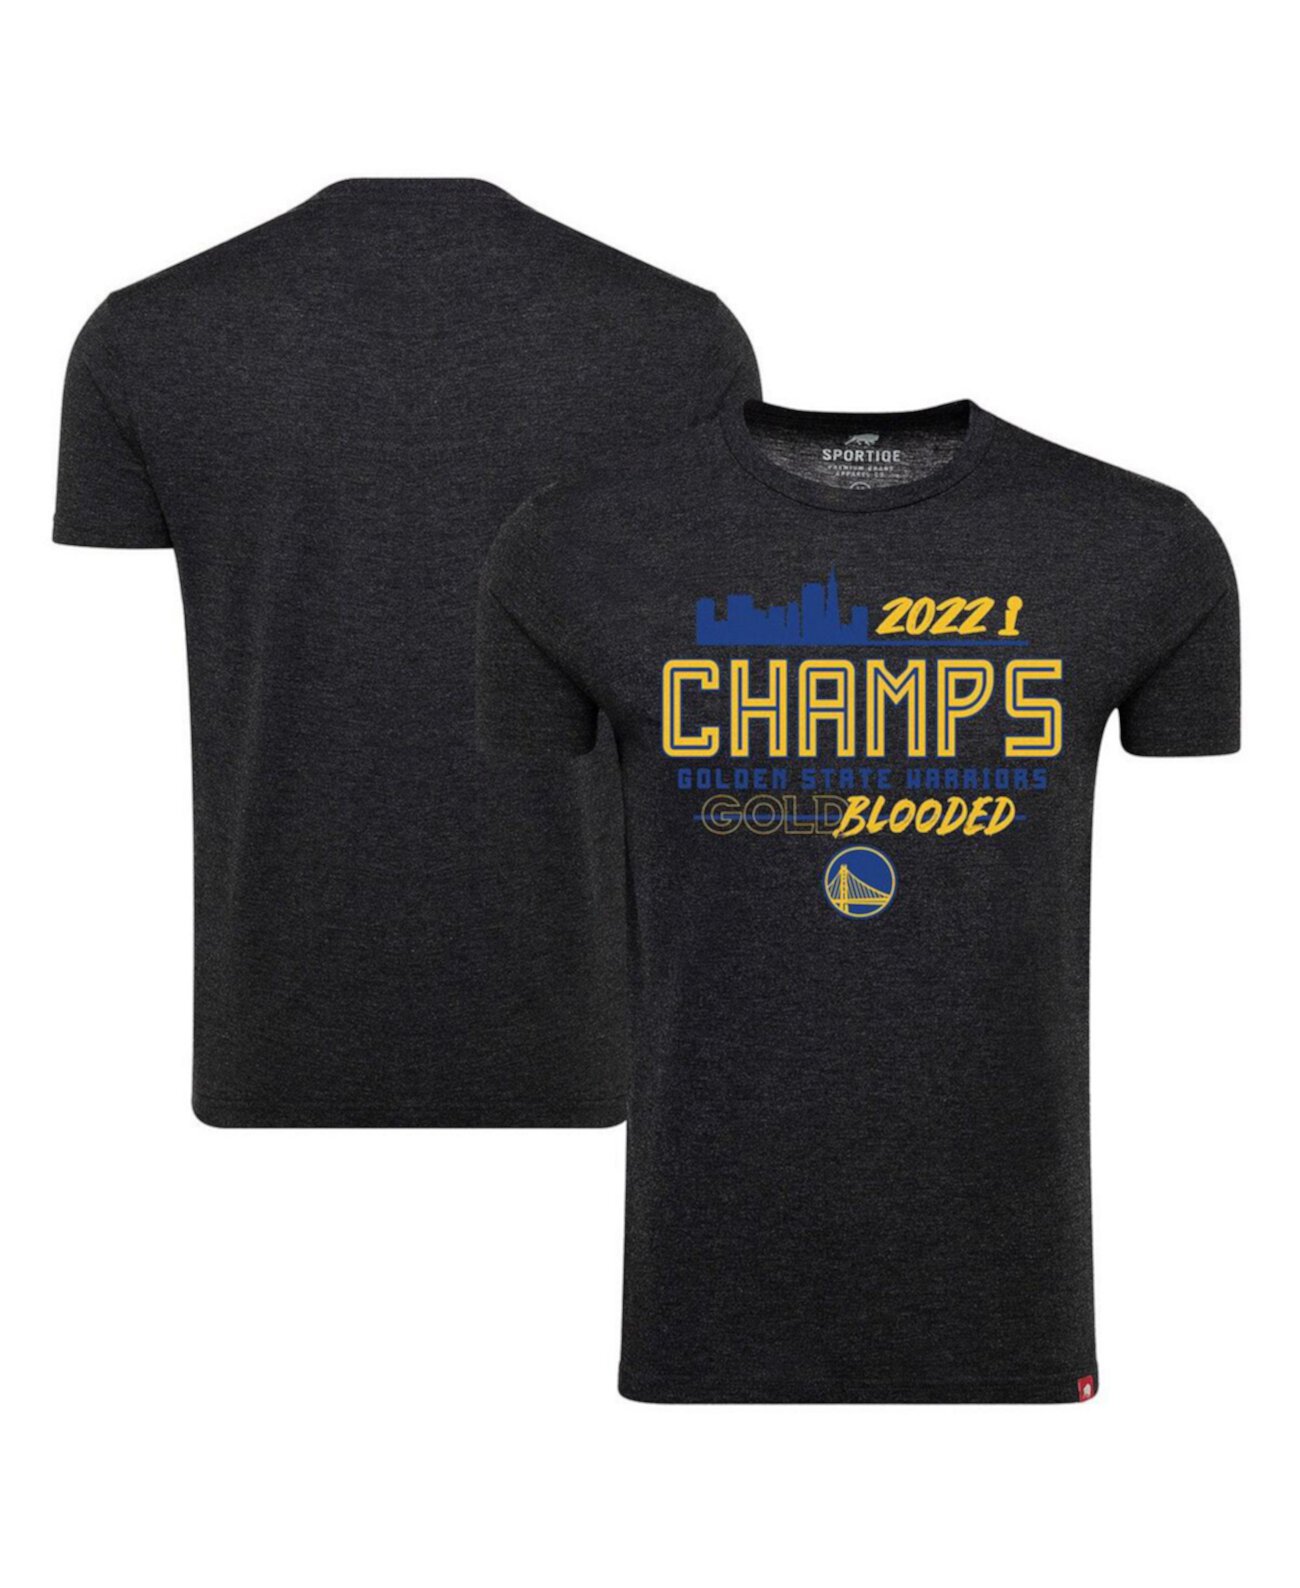 Мужская черная удобная футболка Tri-Blend Golden State Warriors NBA Finals Champions с надписью Sportiqe